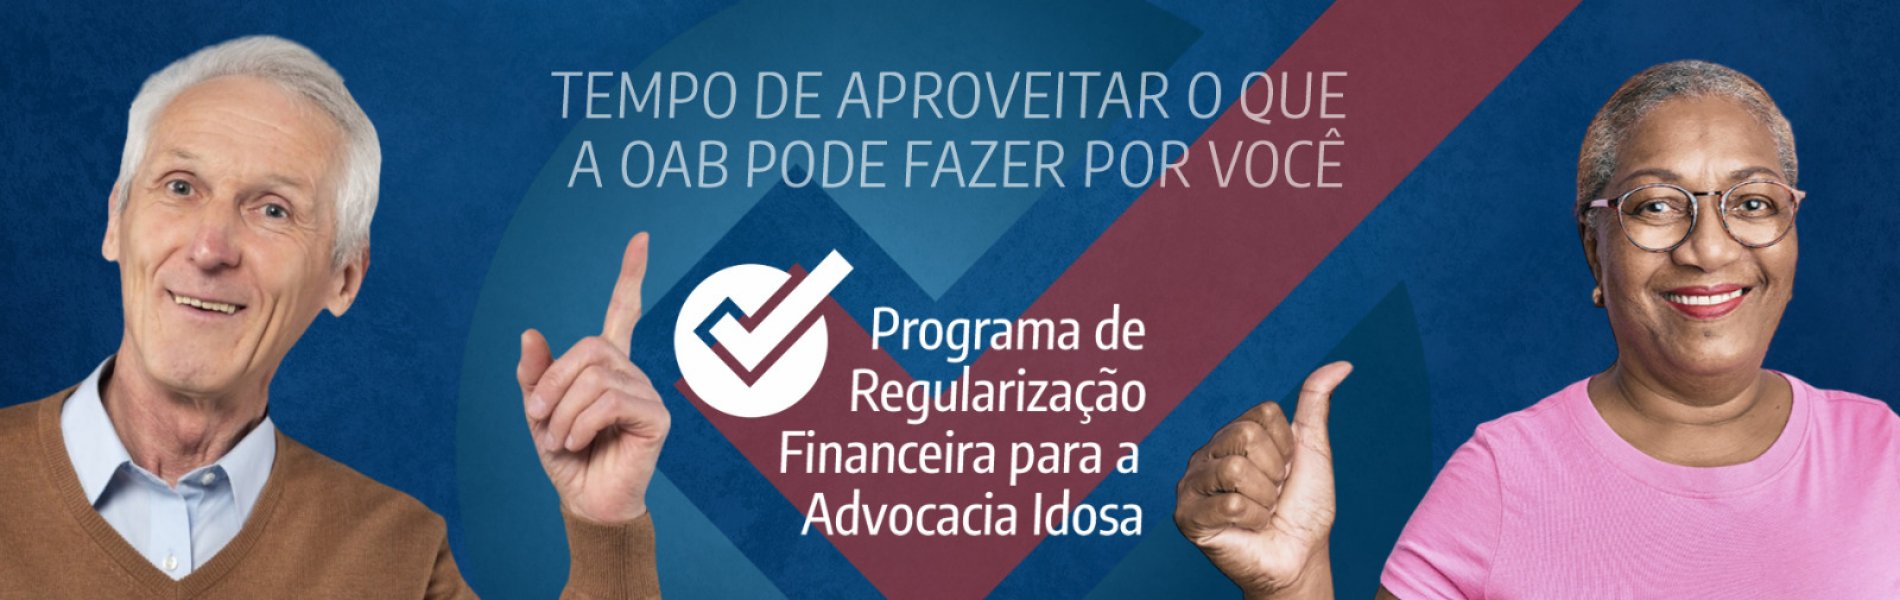 [OAB da Bahia lança programa de regularização voltado para a advocacia idosa]